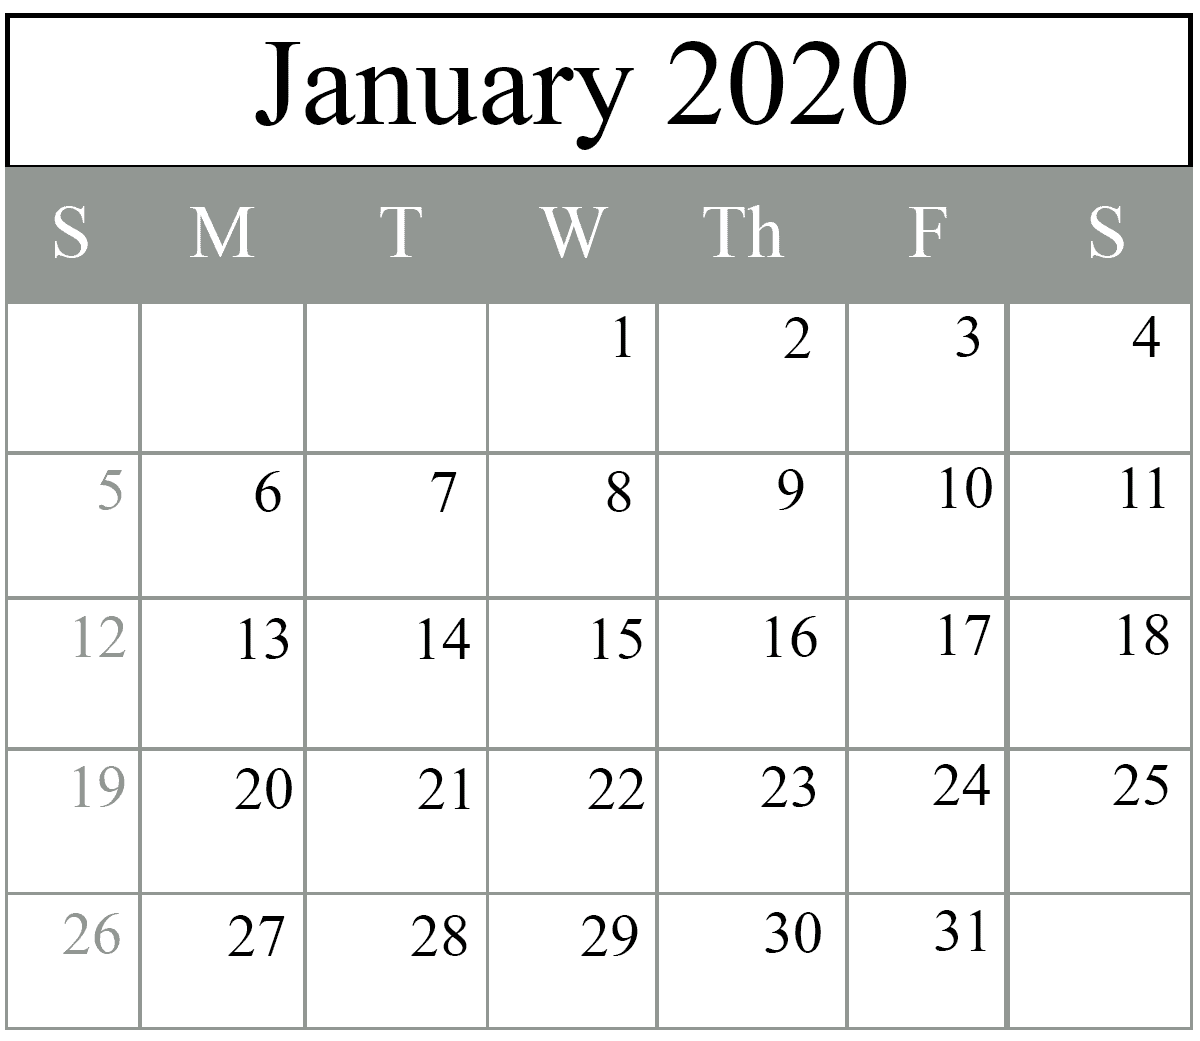 January Calendar Template 2020, January 2020 Calendar Template